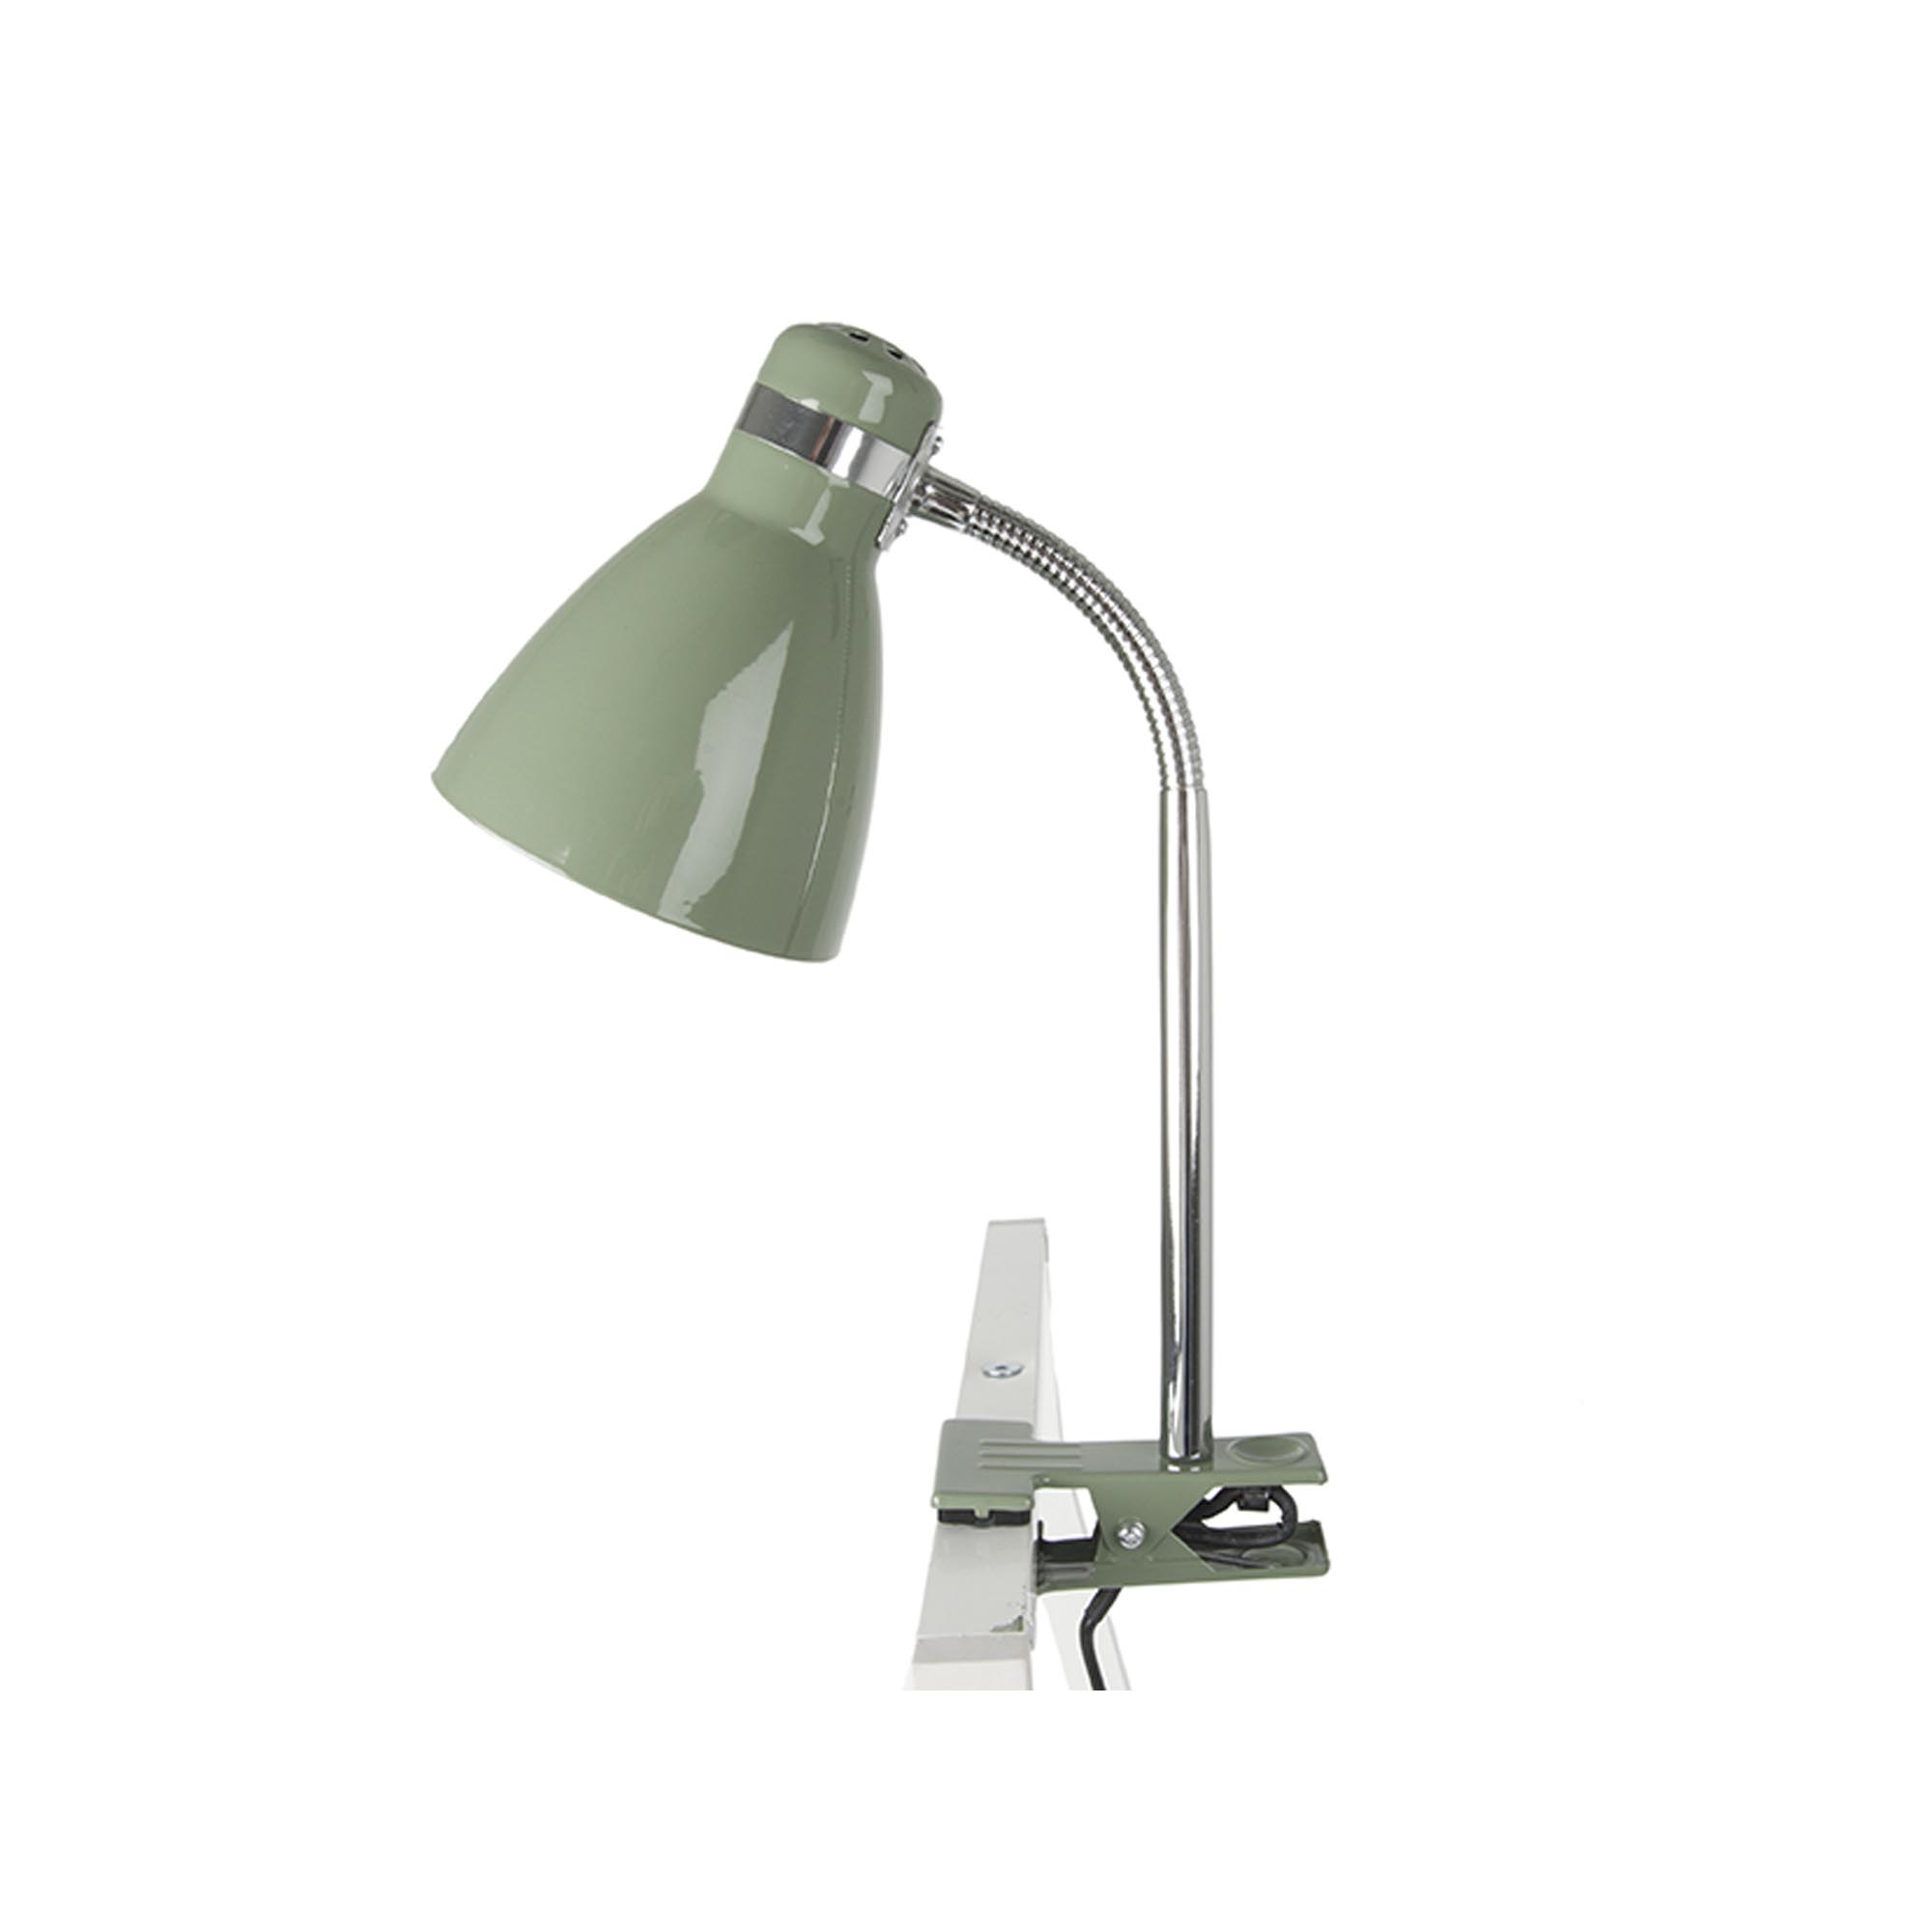 Leitmotiv Knijplamp - Cliplamp Study groen - metaal - h 34 cm